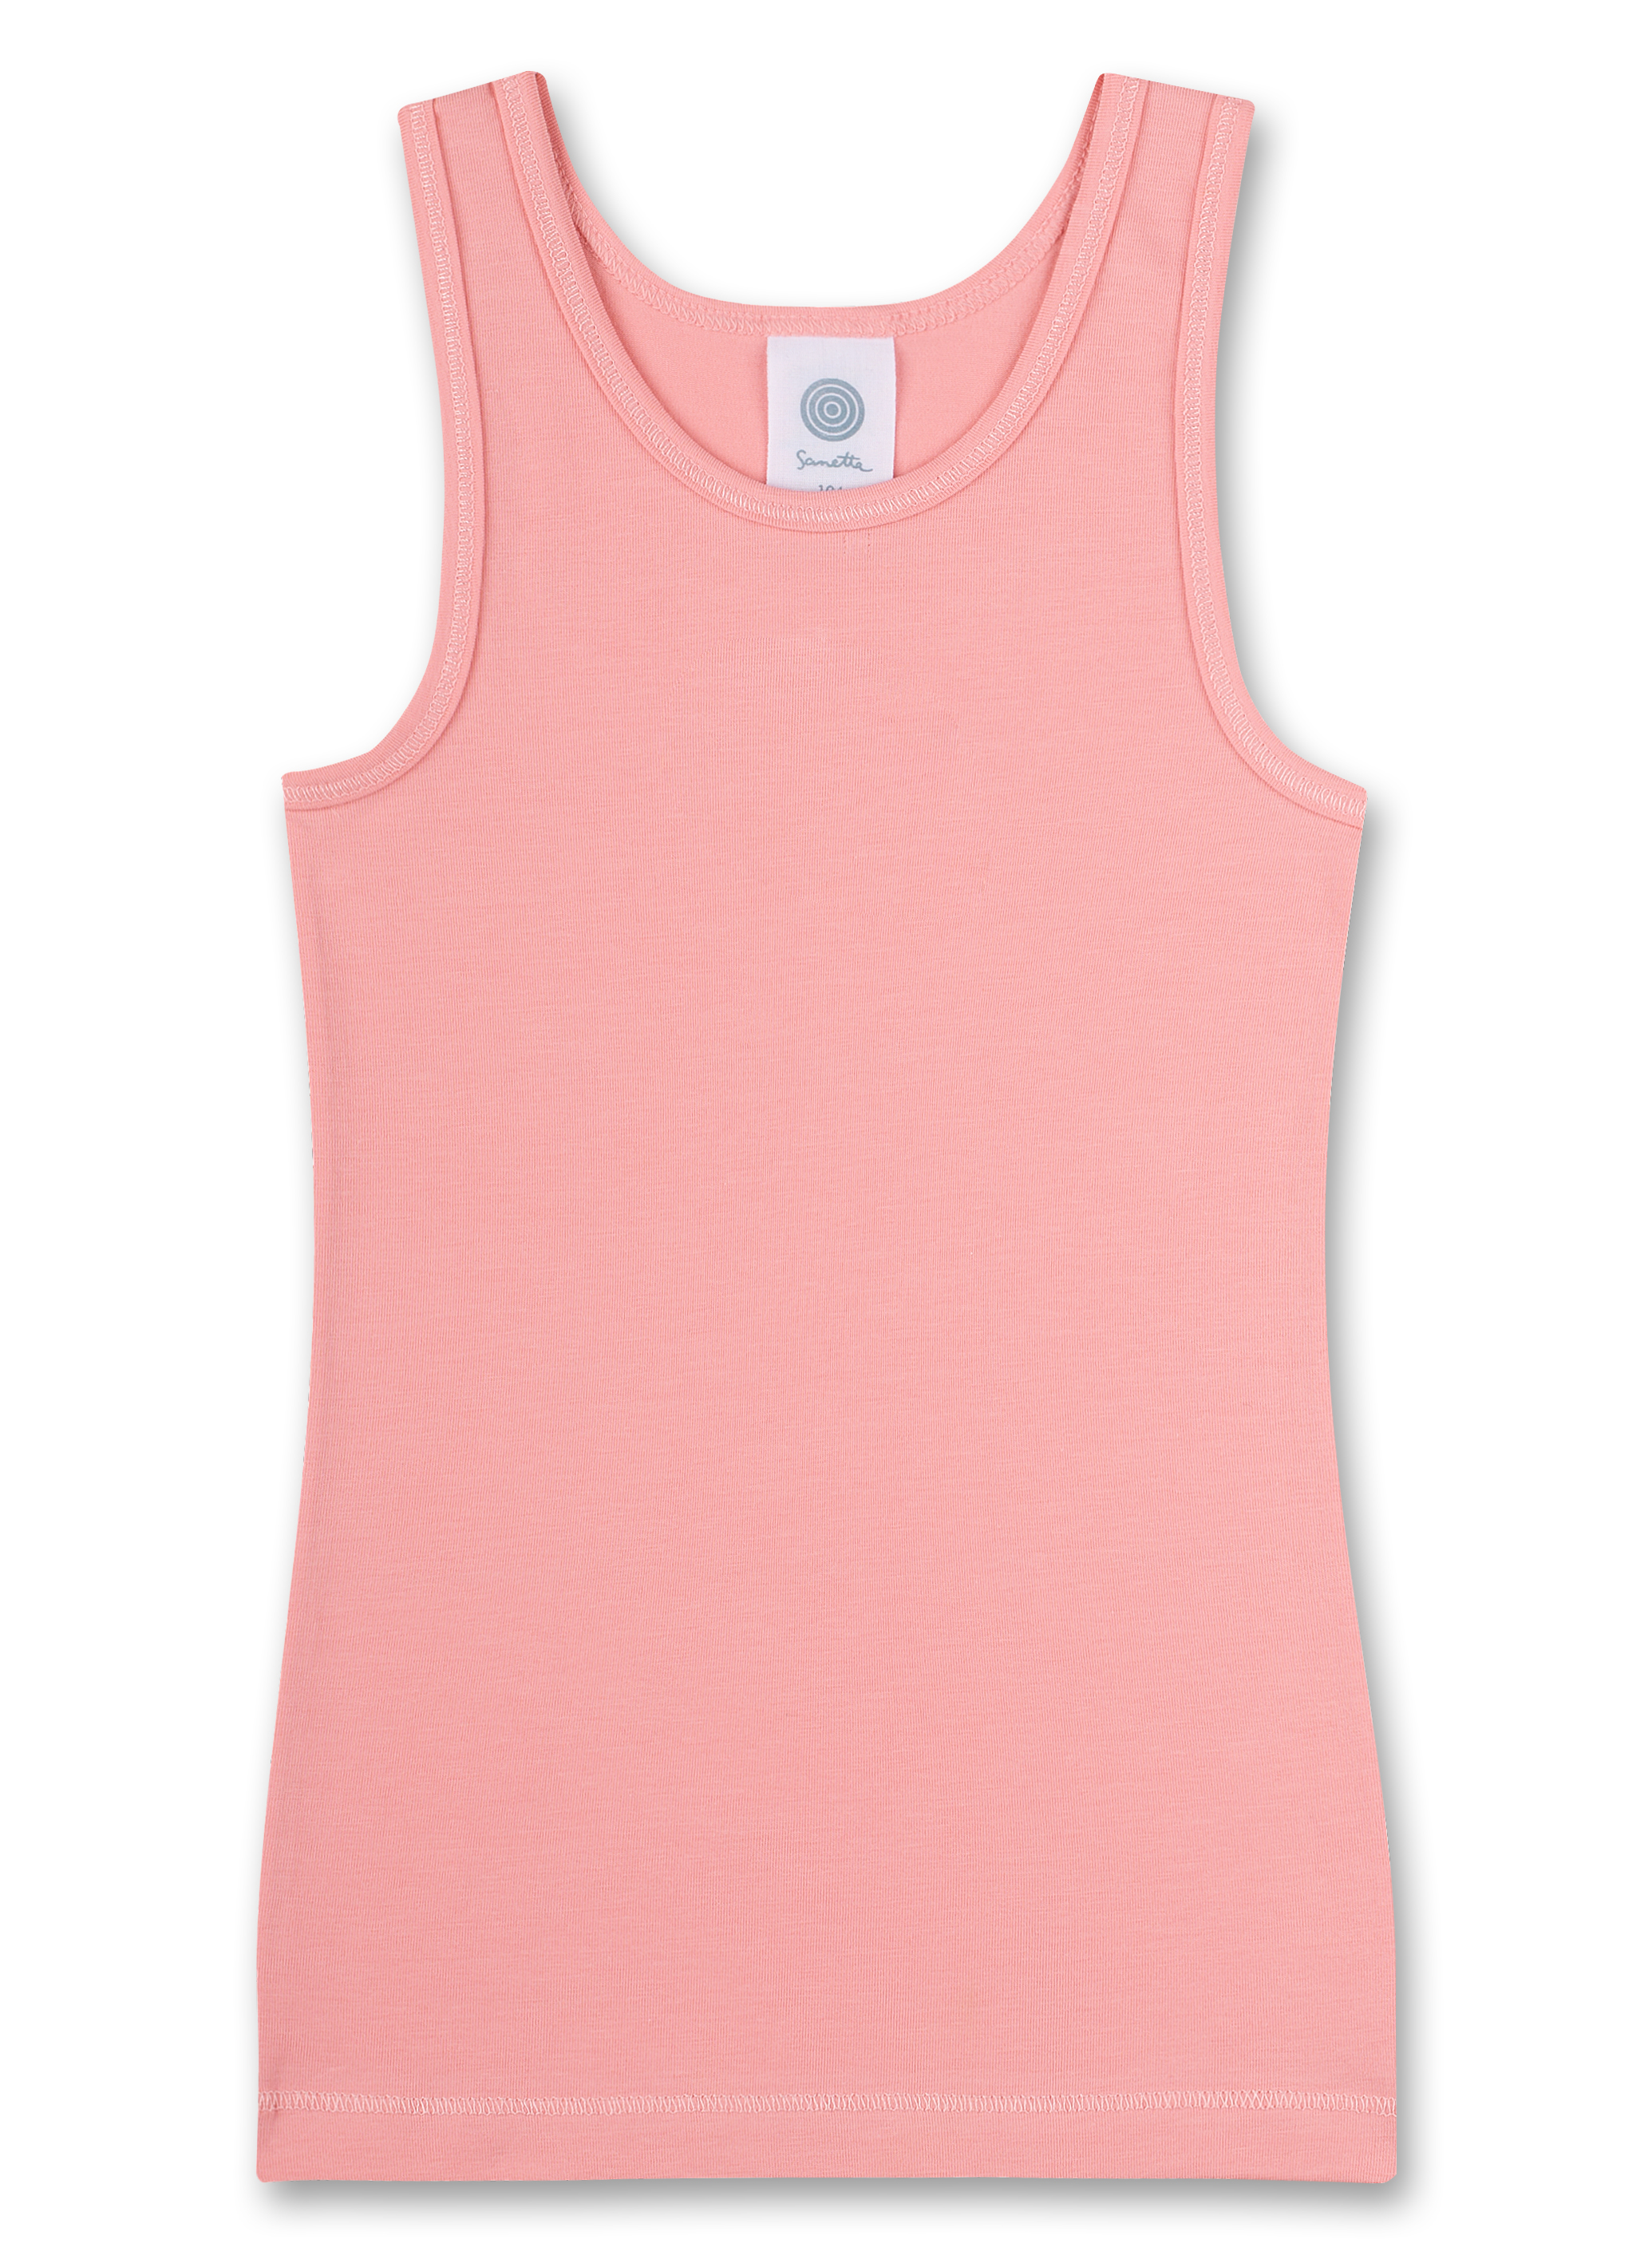 Mädchen-Unterhemd (Dopplepack) Off-White und Rosa